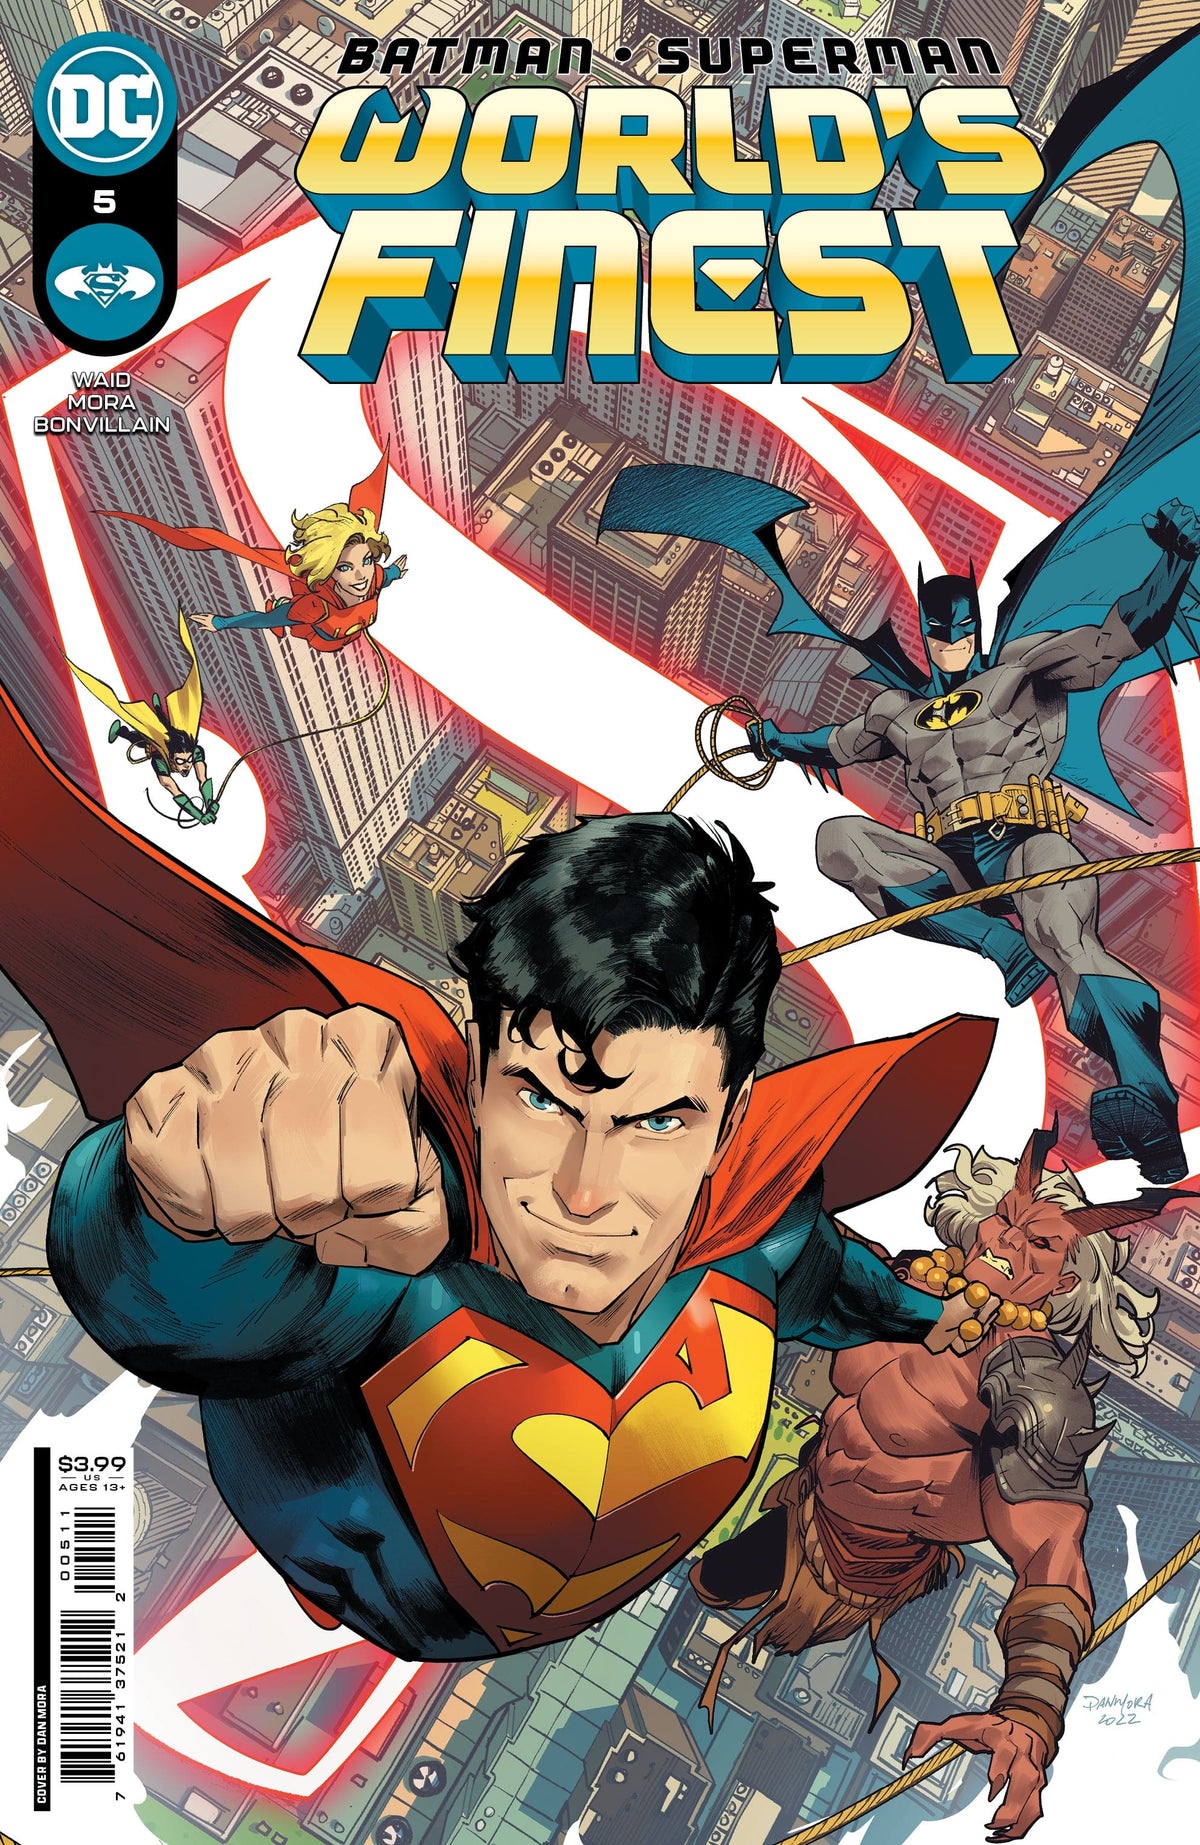 BATMAN SUPERMAN WORLDS FINEST #5 CVR A DAN MORA - Third Eye